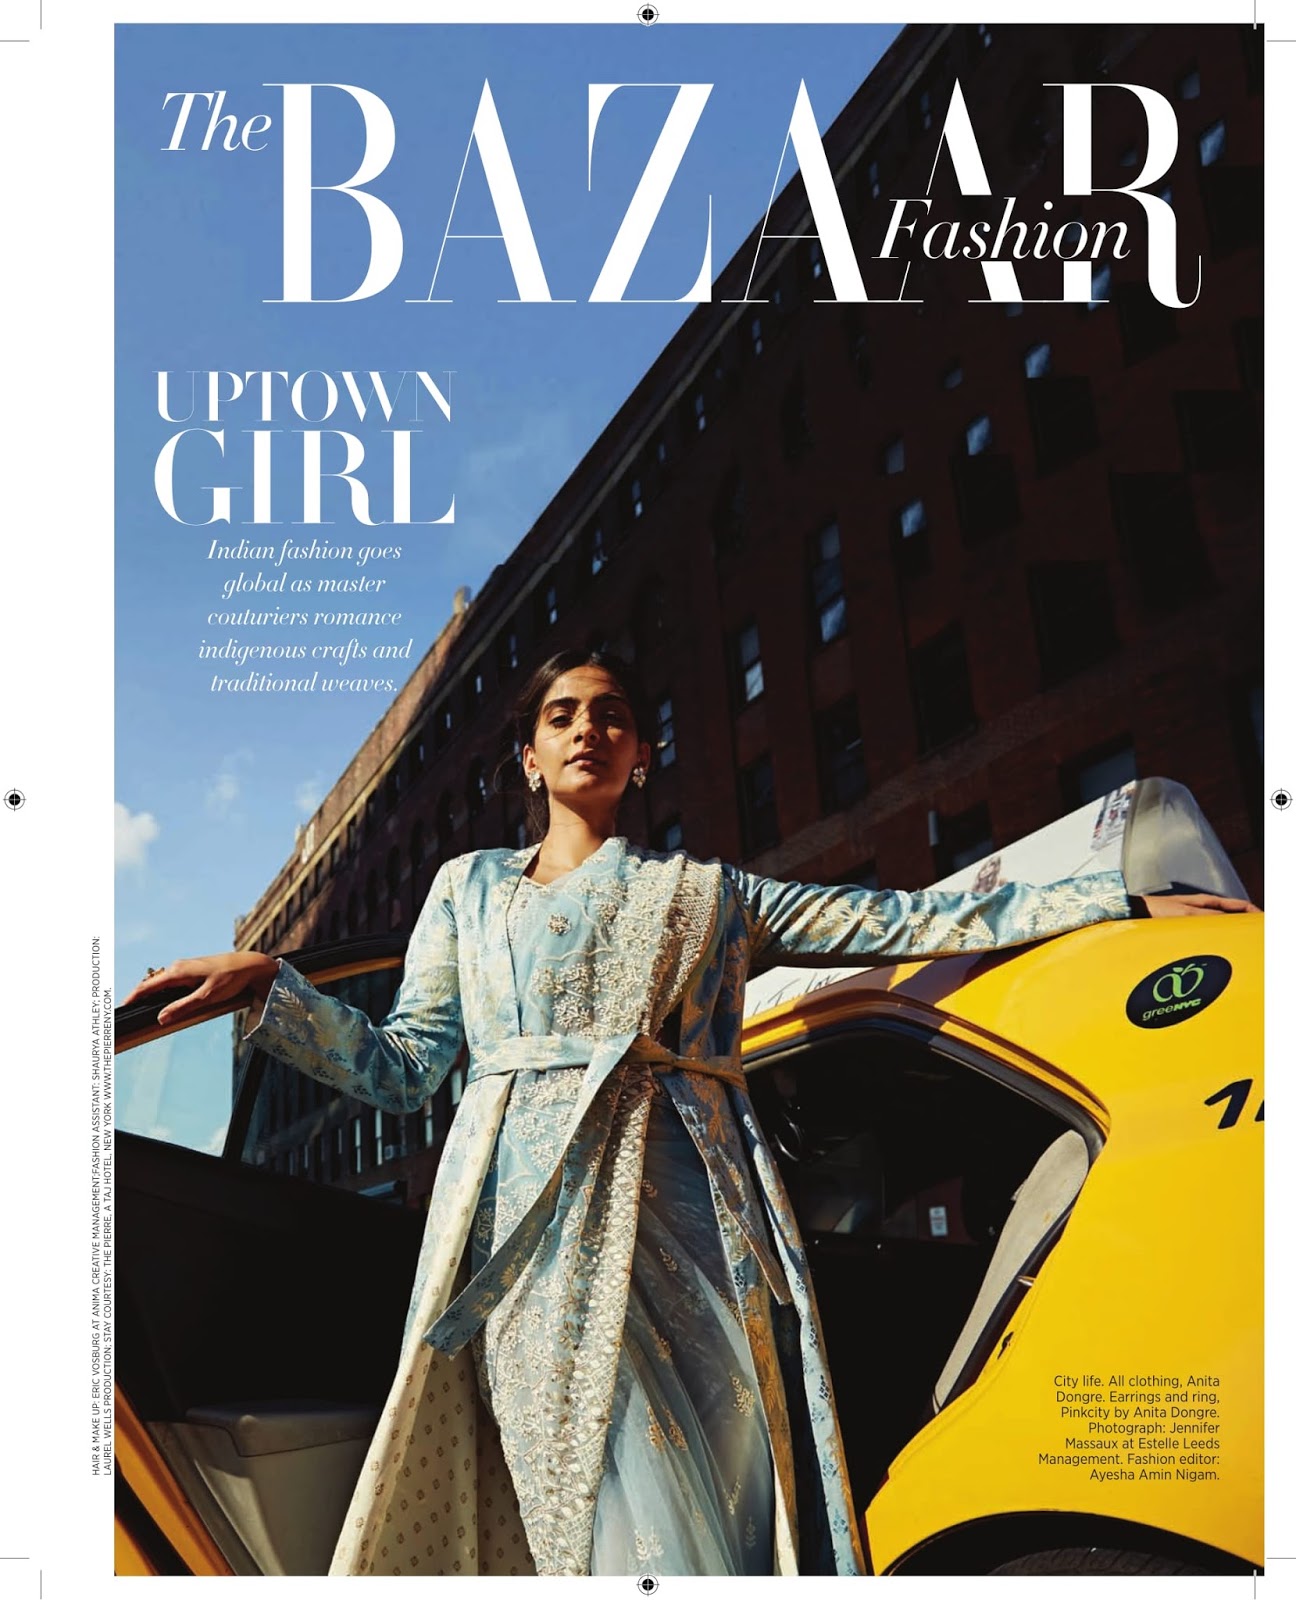 Sonam Kapoor In Anita Dongre On Bazaar Bride